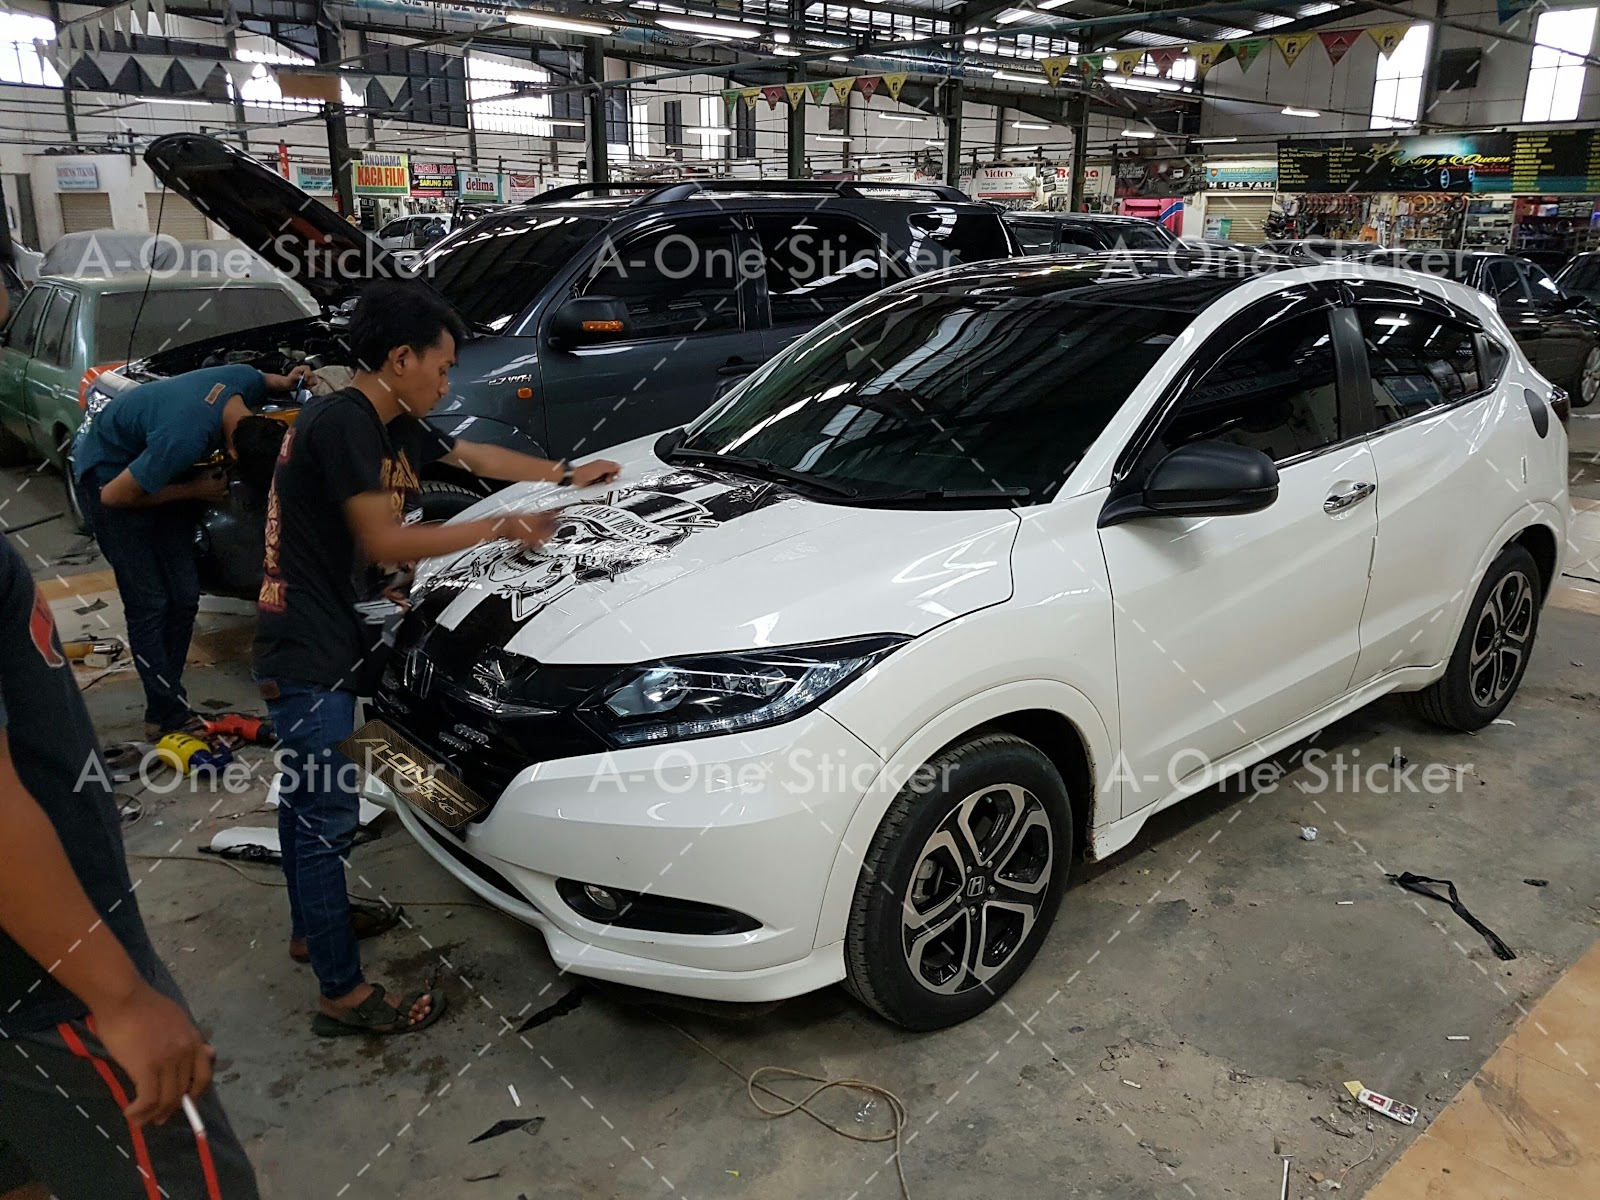 Kumpulan Modifikasi Cutting Sticker Mobil Jakarta Terlengkap